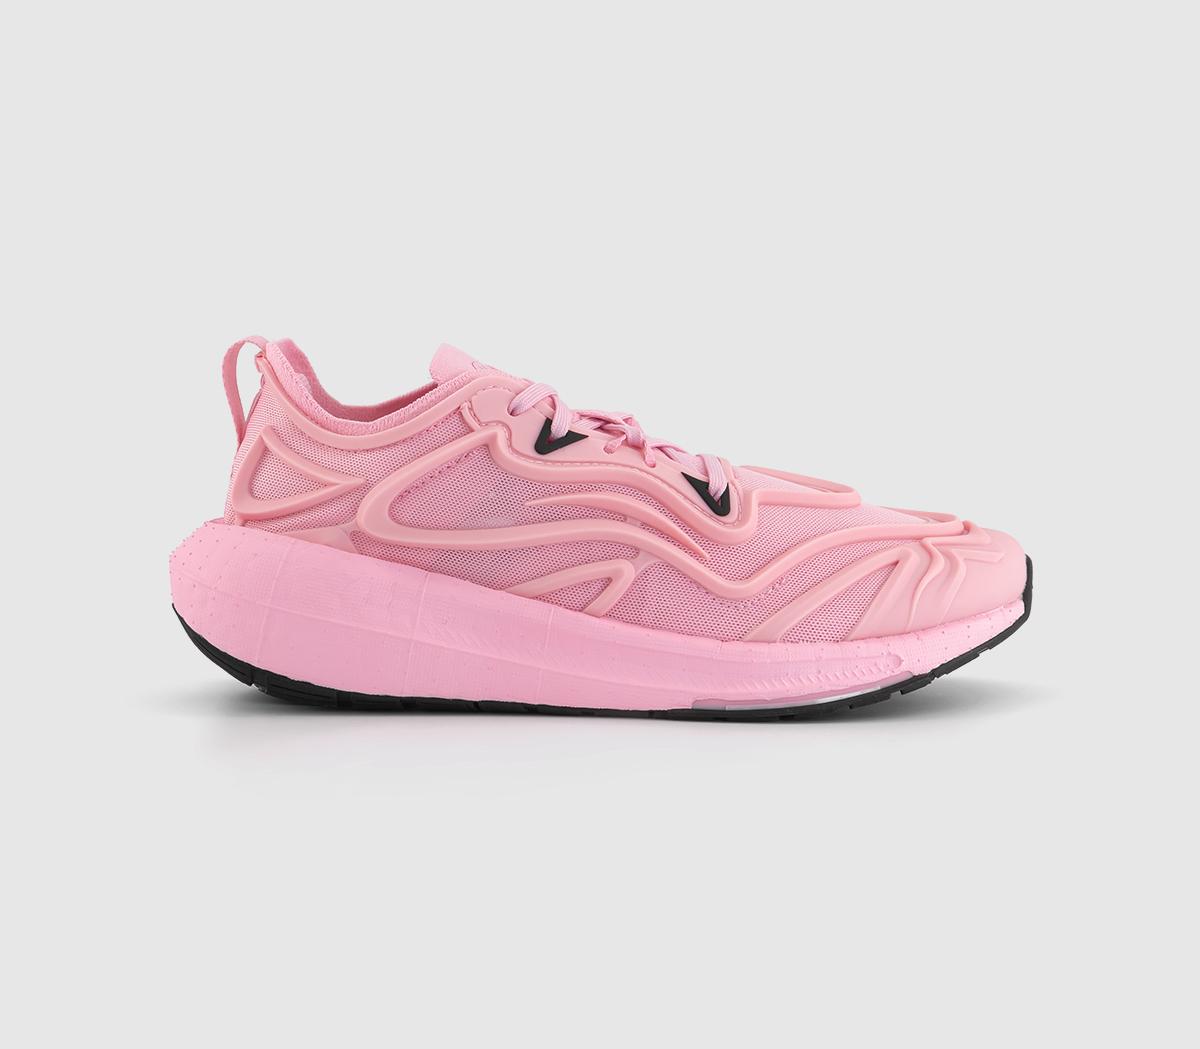 adidas Stella McCartneyUltra Boost Speed TrainersTrue Pink True Pink Black